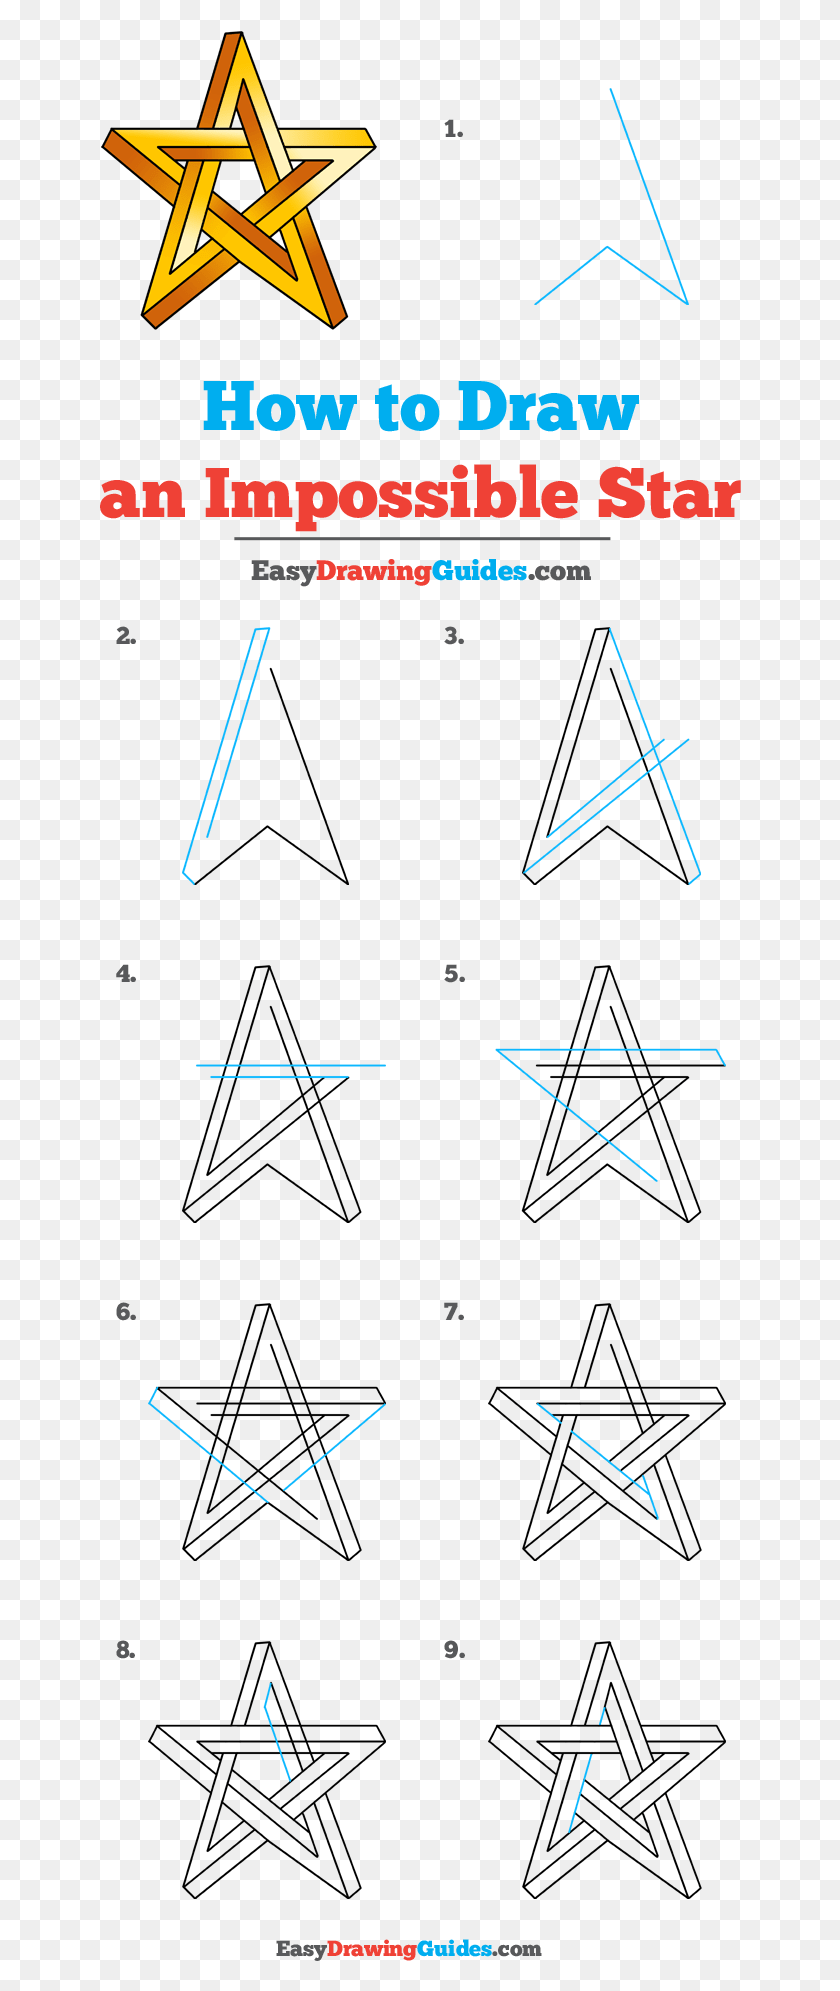 642x1931 Как Нарисовать Невозможную Звезду Легкие Наброски Для Начинающих Треугольник, График, Диаграмма, На Открытом Воздухе Hd Png Скачать